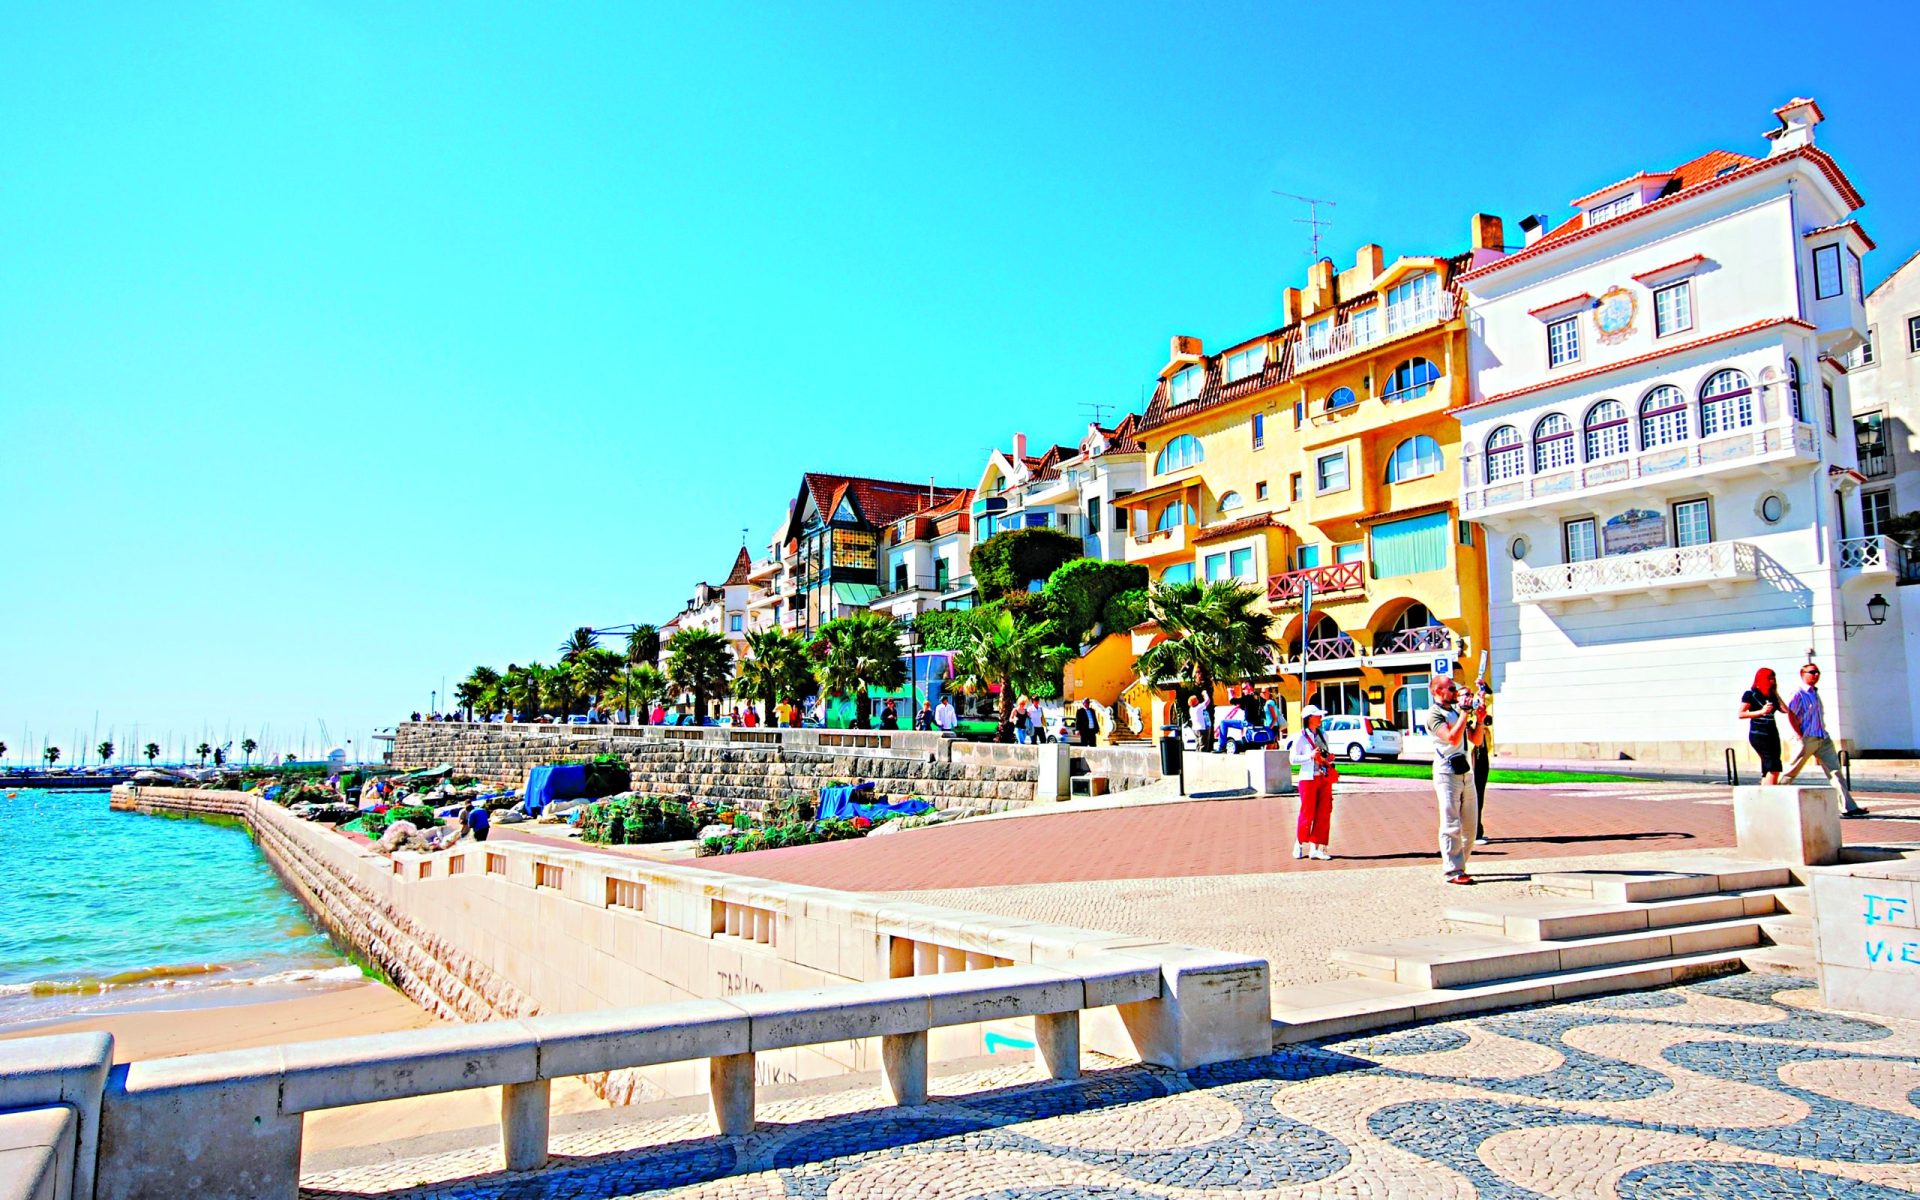 Casas de luxo. Conheça o ranking das zonas mais caras em Portugal